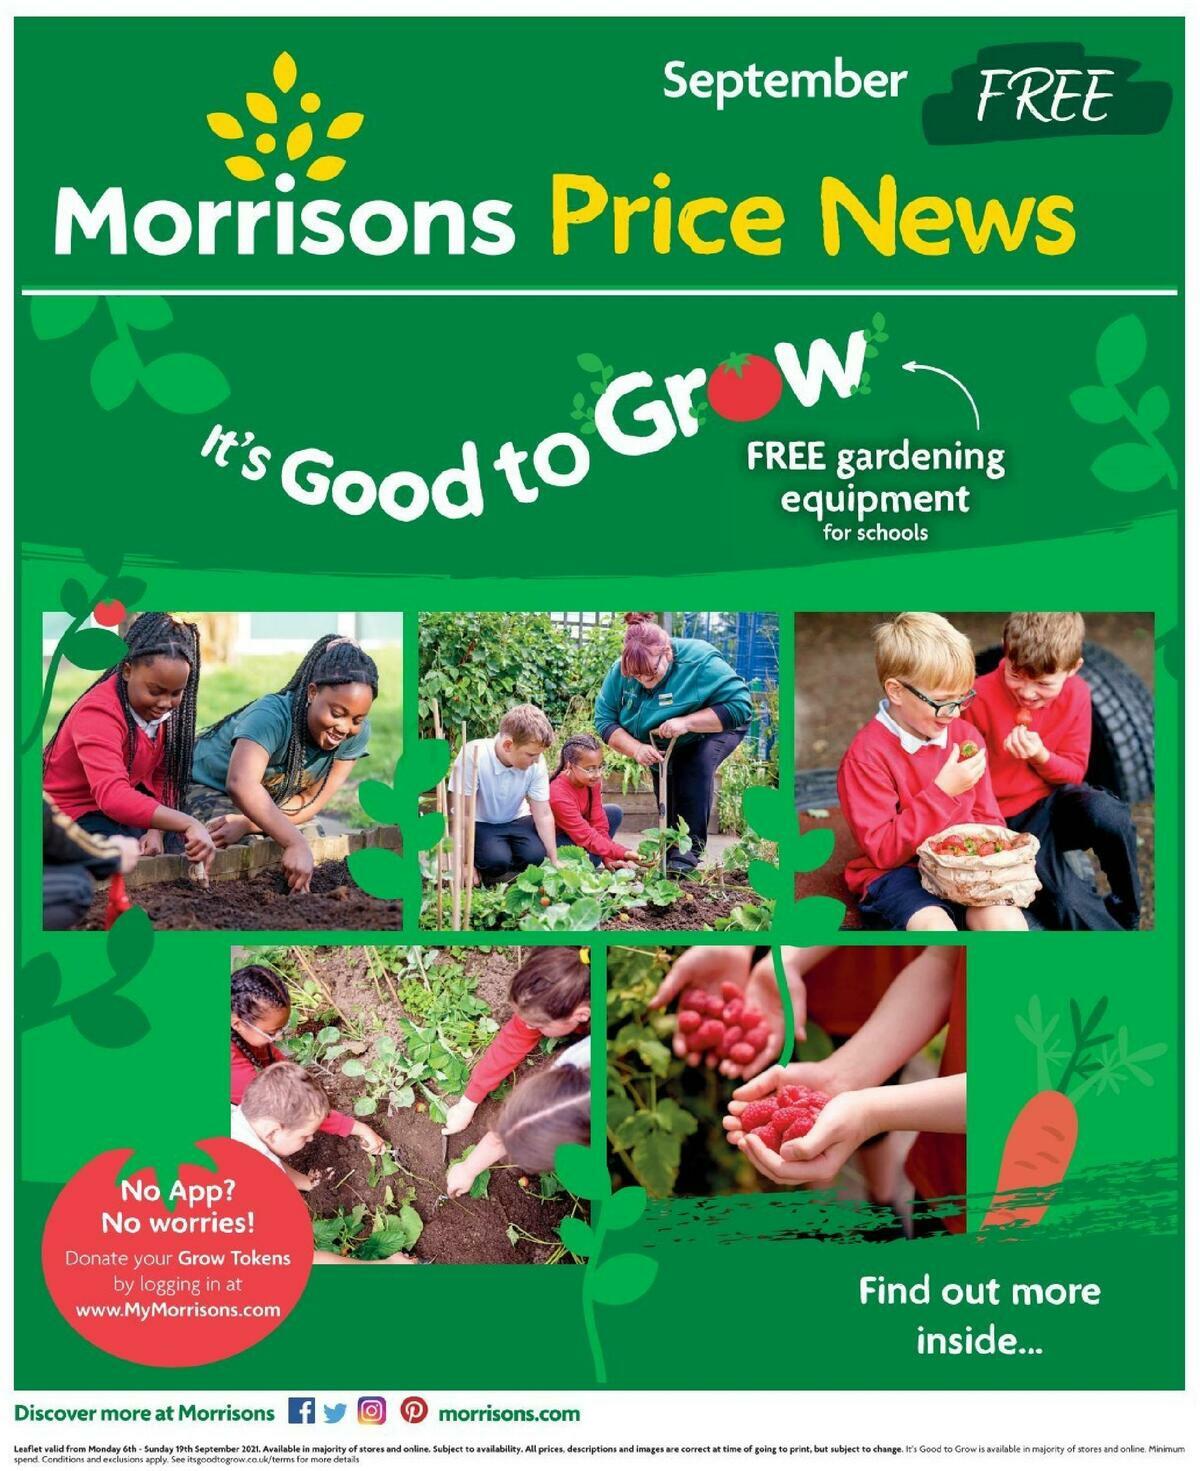 Morrisons Price News - September Offers from 6 September